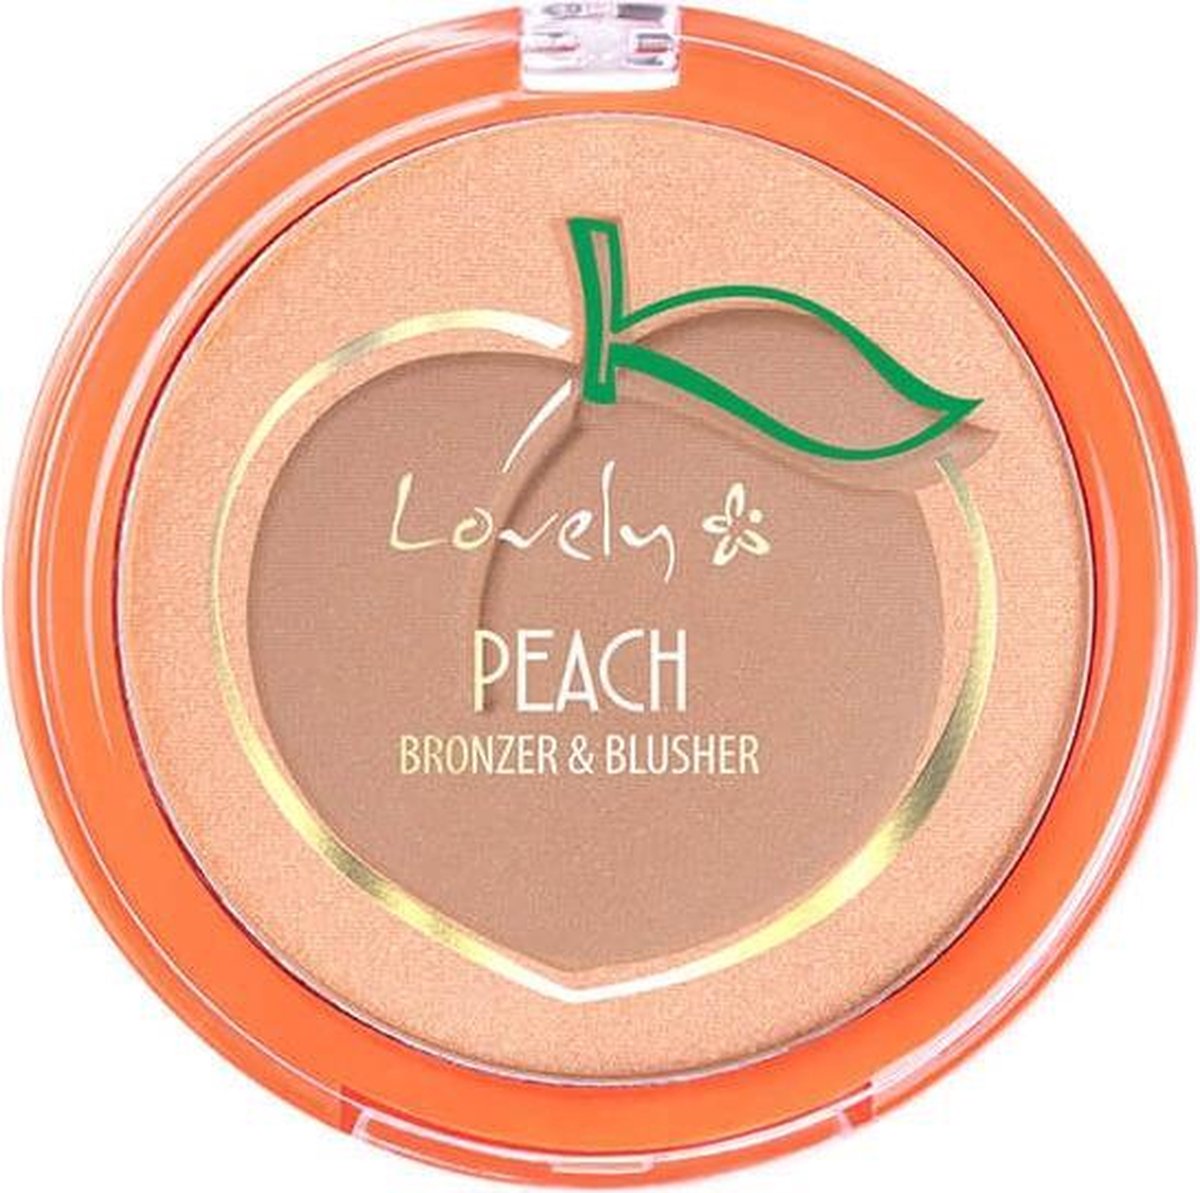 Lovely Peach Bronzer & Blush